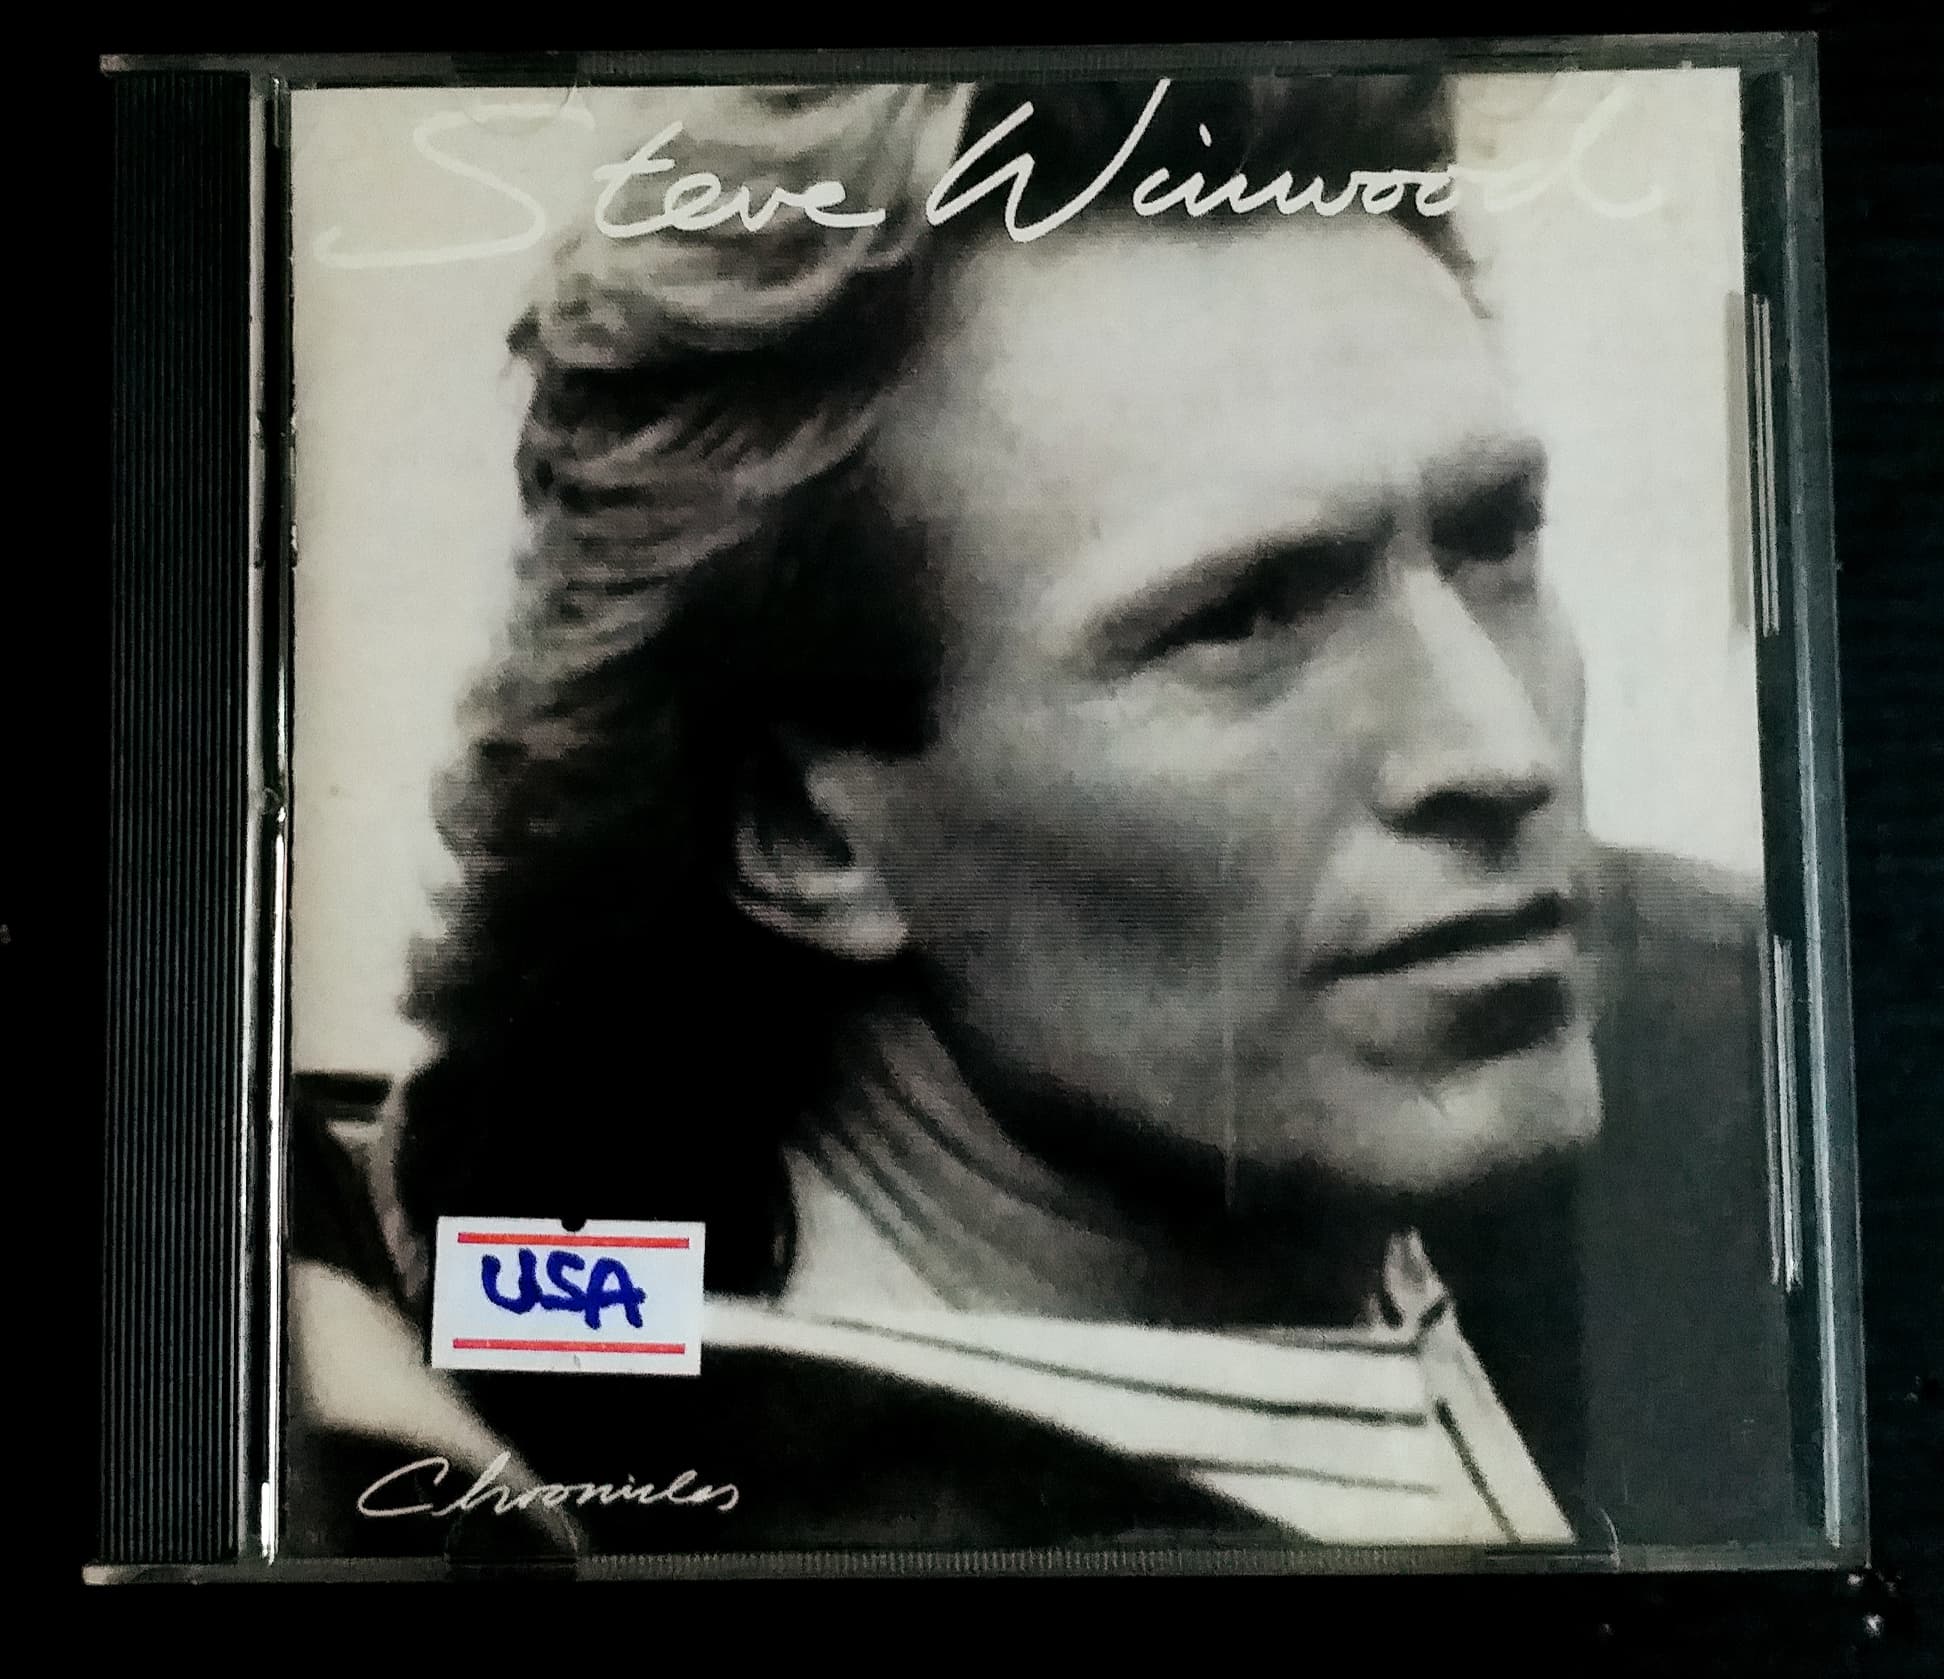 CD STEVE WINWOOD ชุด CHRONICLES MADE IN USA